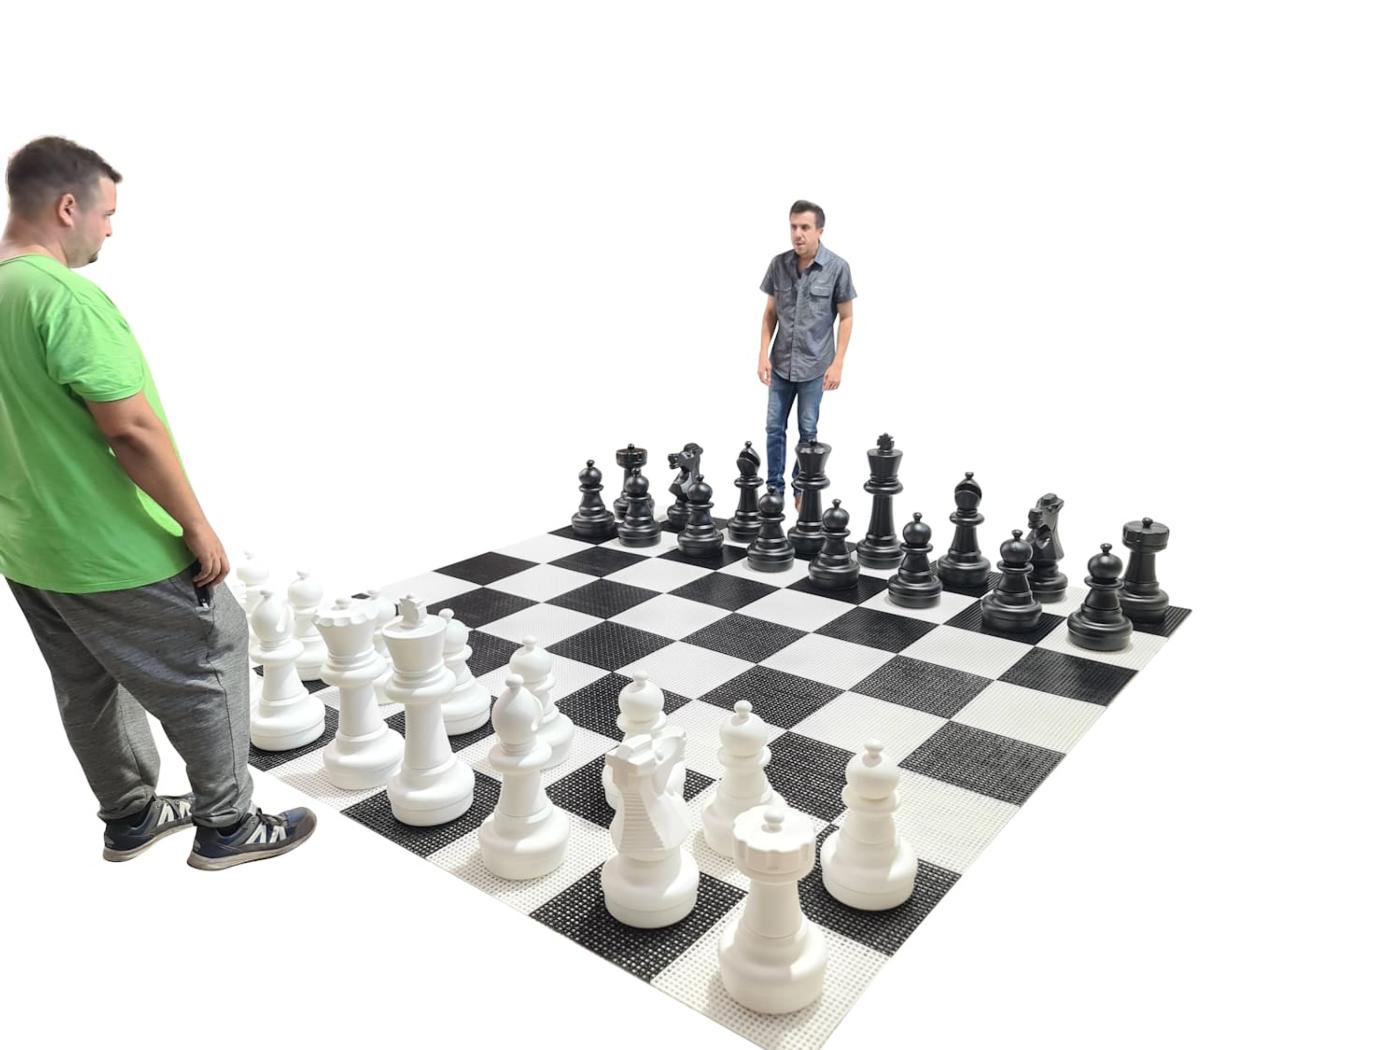 Juego de ajedrez gigante con tablero rígido gigante incluido juego completo sobre tablero con jugadores